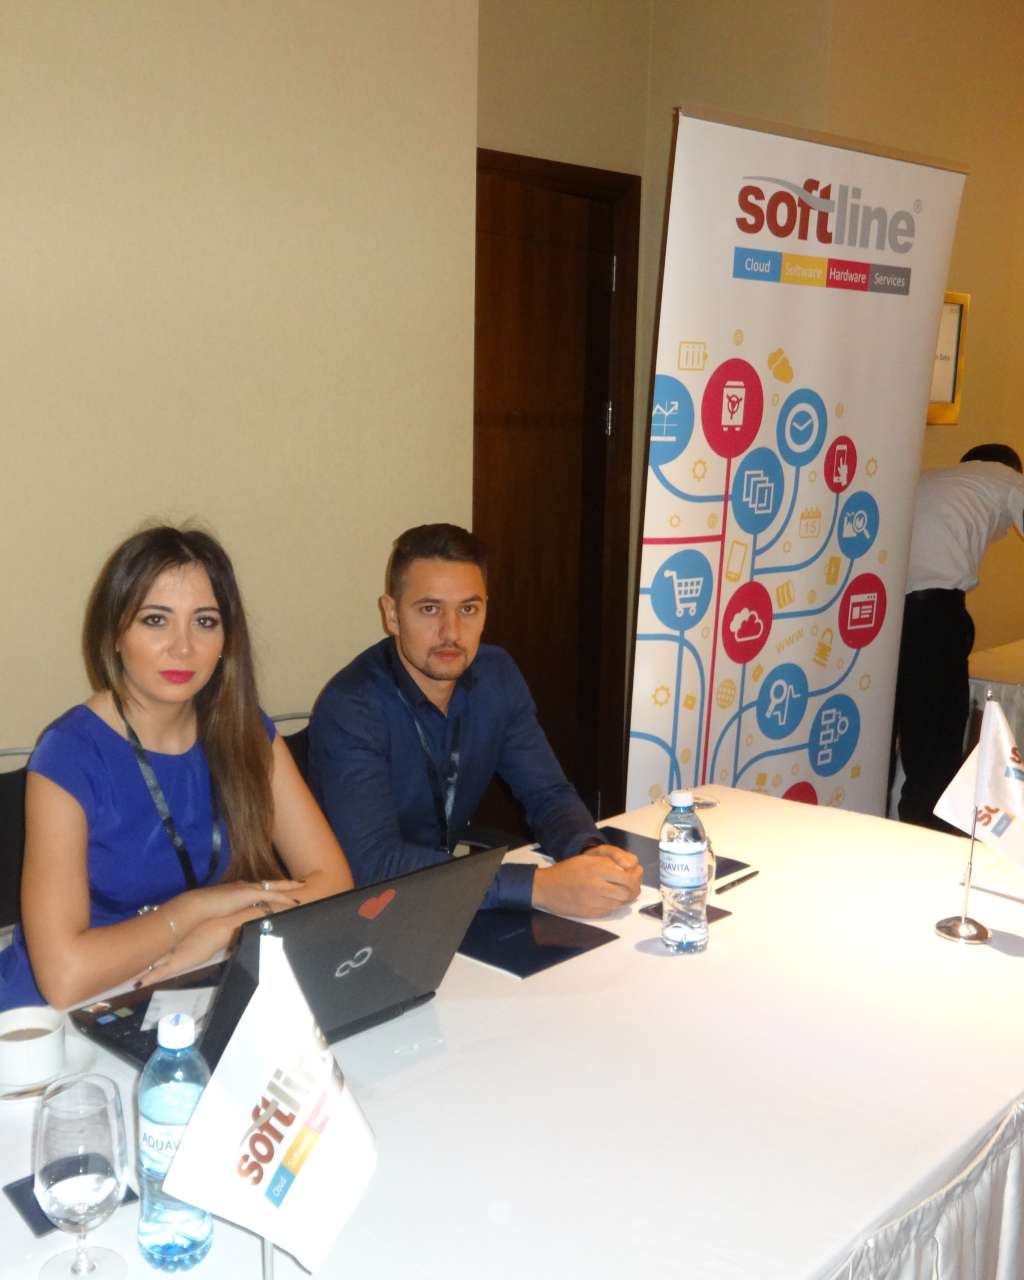 Softline приняла участие в конференции "VMware Tour 2015" в качестве инновационного партнера мероприятия